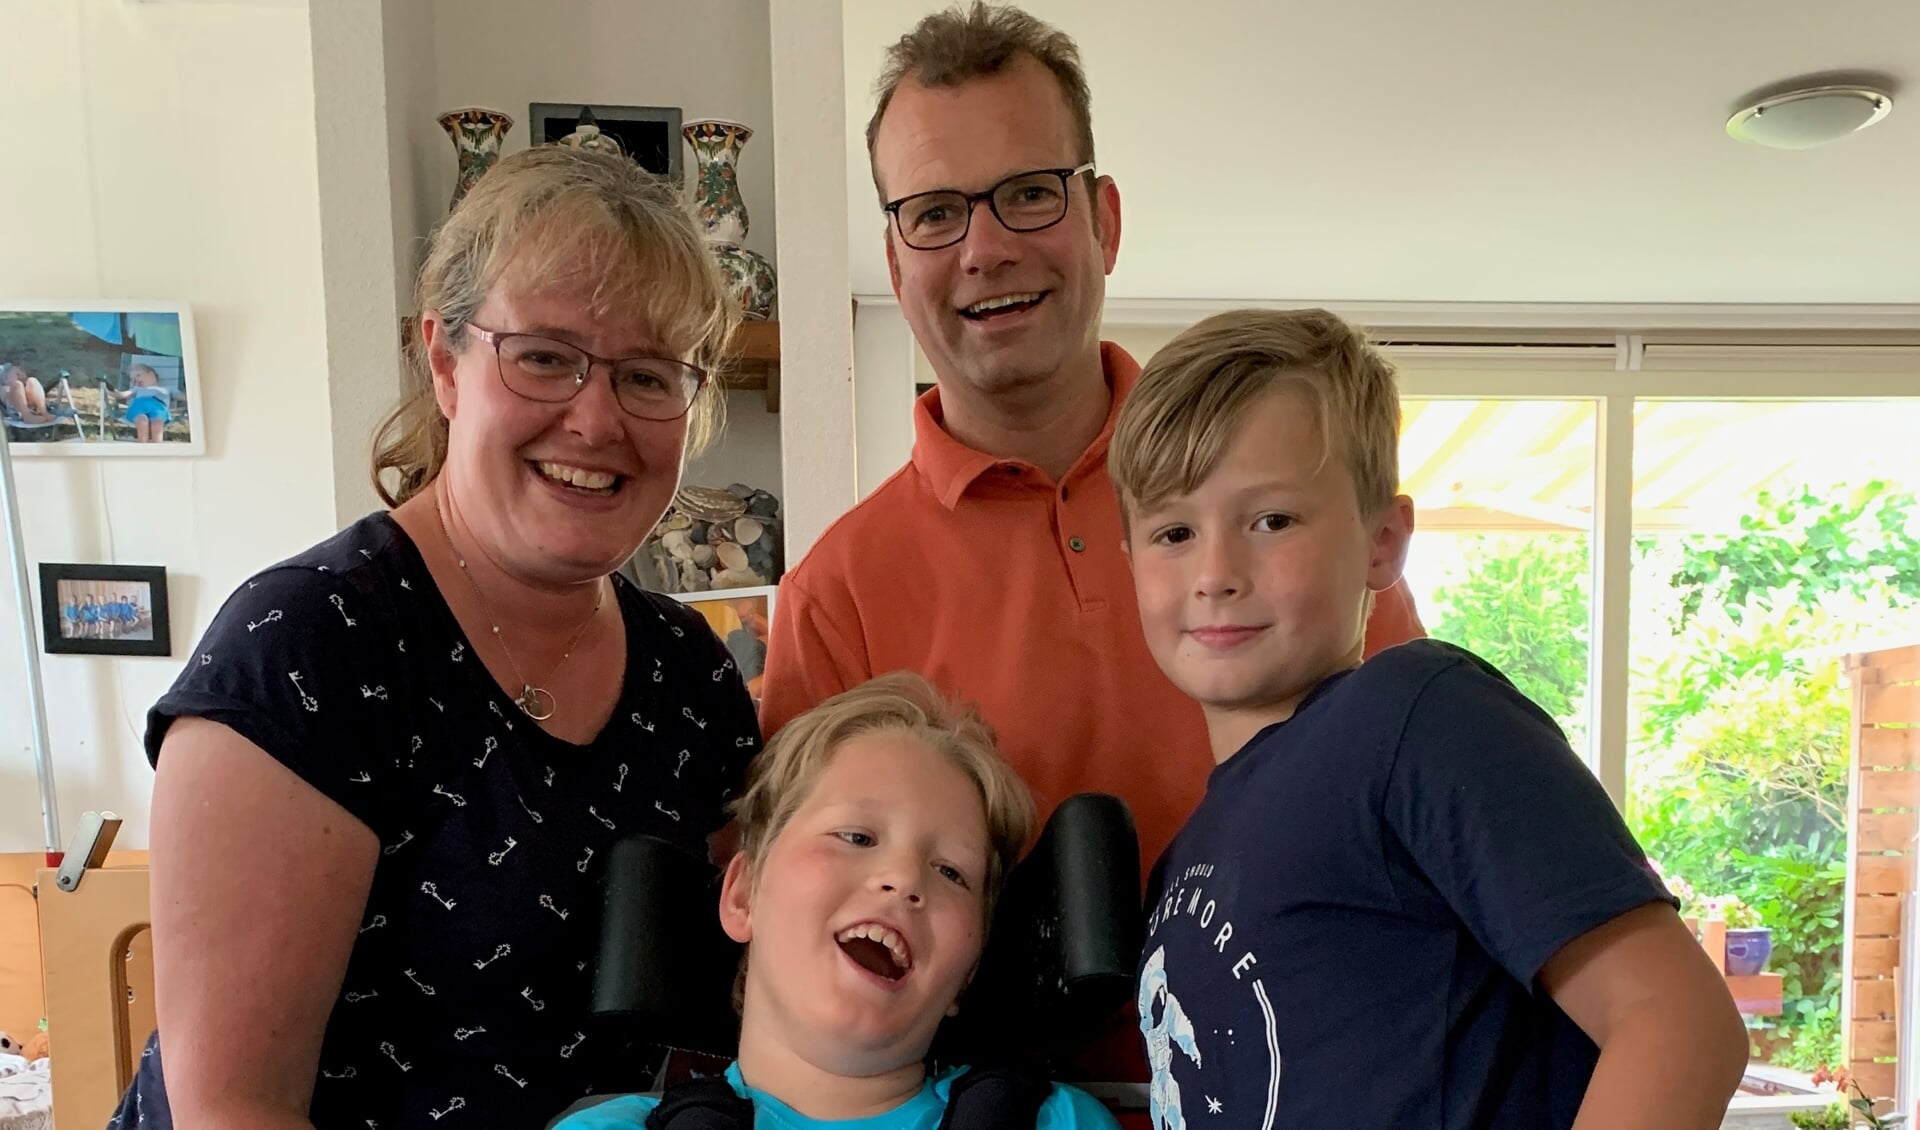 De hartenwens van Dylan en zijn familie uit Leusden gaat in vervulling dankzij een aanvraag van Stichting Zeldzame Ziekten Fonds bij het VriendenFonds van de VriendenLoterij.